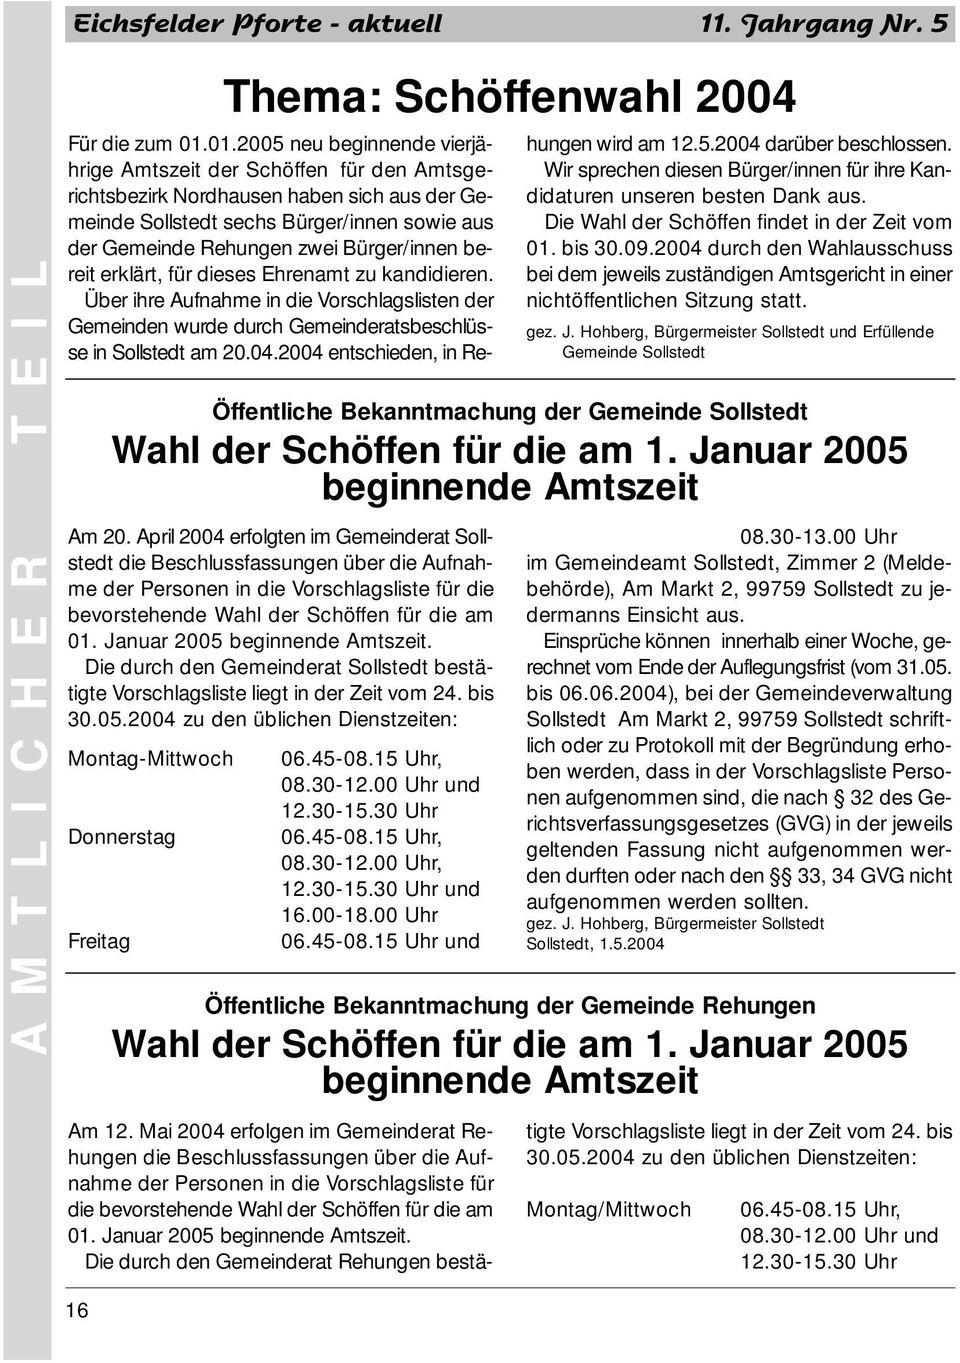 Januar 2005 beginnende Amtszeit. Die durch den Gemeinderat Sollstedt bestätigte Vorschlagsliste liegt in der Zeit vom 24. bis 30.05.2004 zu den üblichen Dienstzeiten: Montag-Mittwoch 06.45-08.